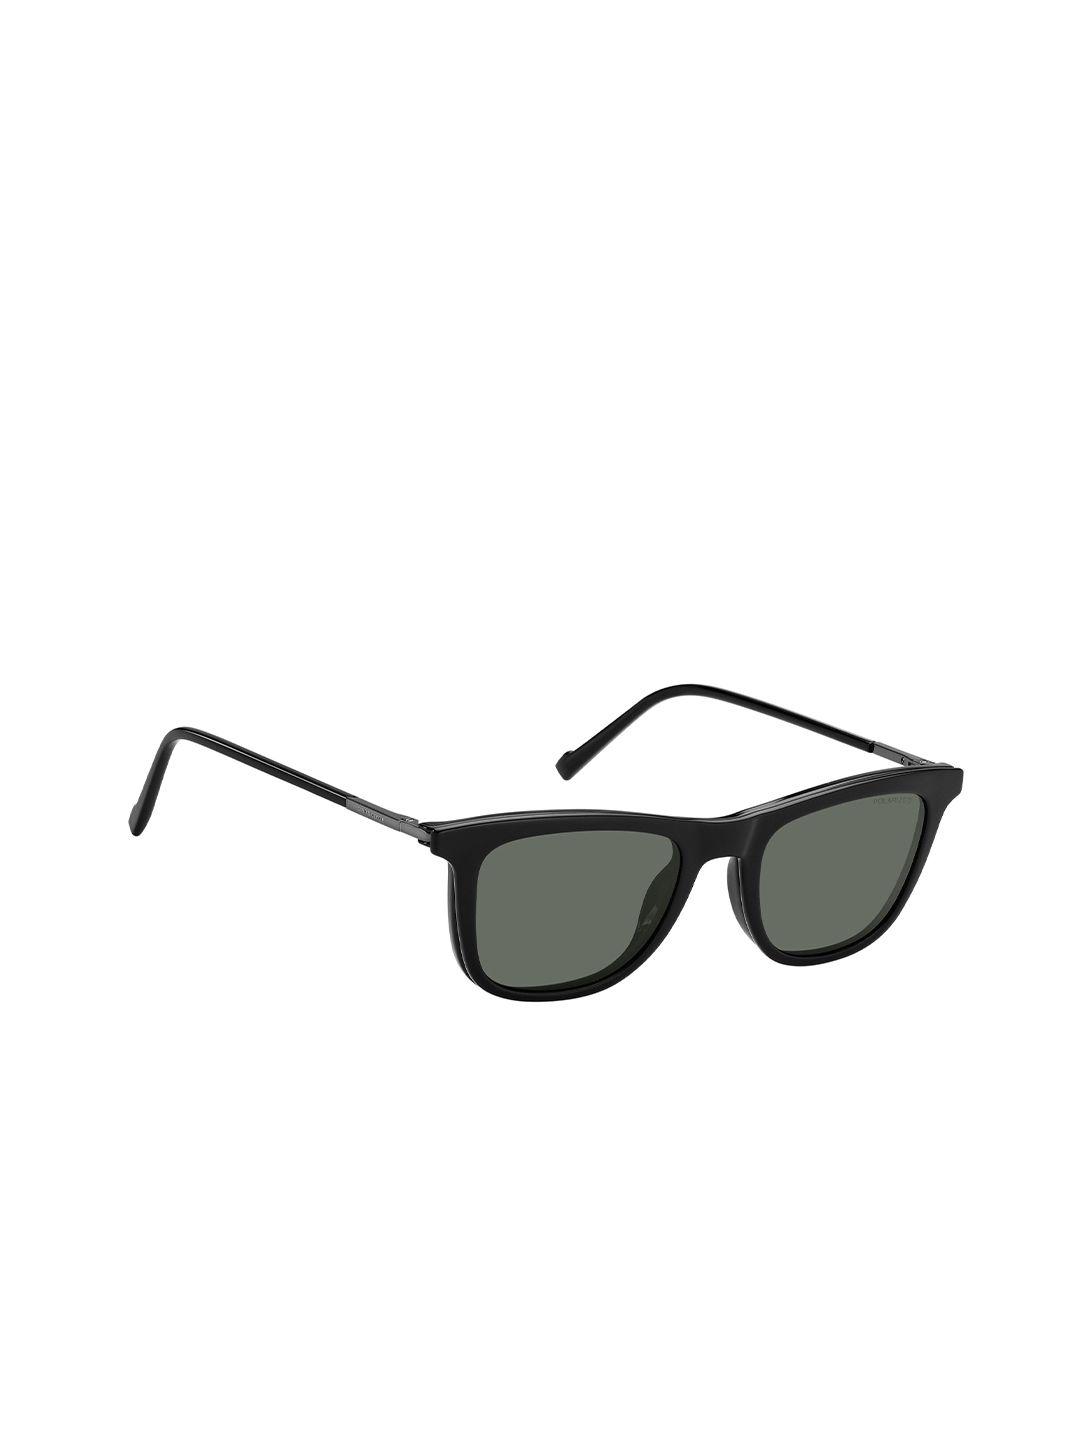 pierre cardin men square sunglasses with polarised lens 20332680752m9